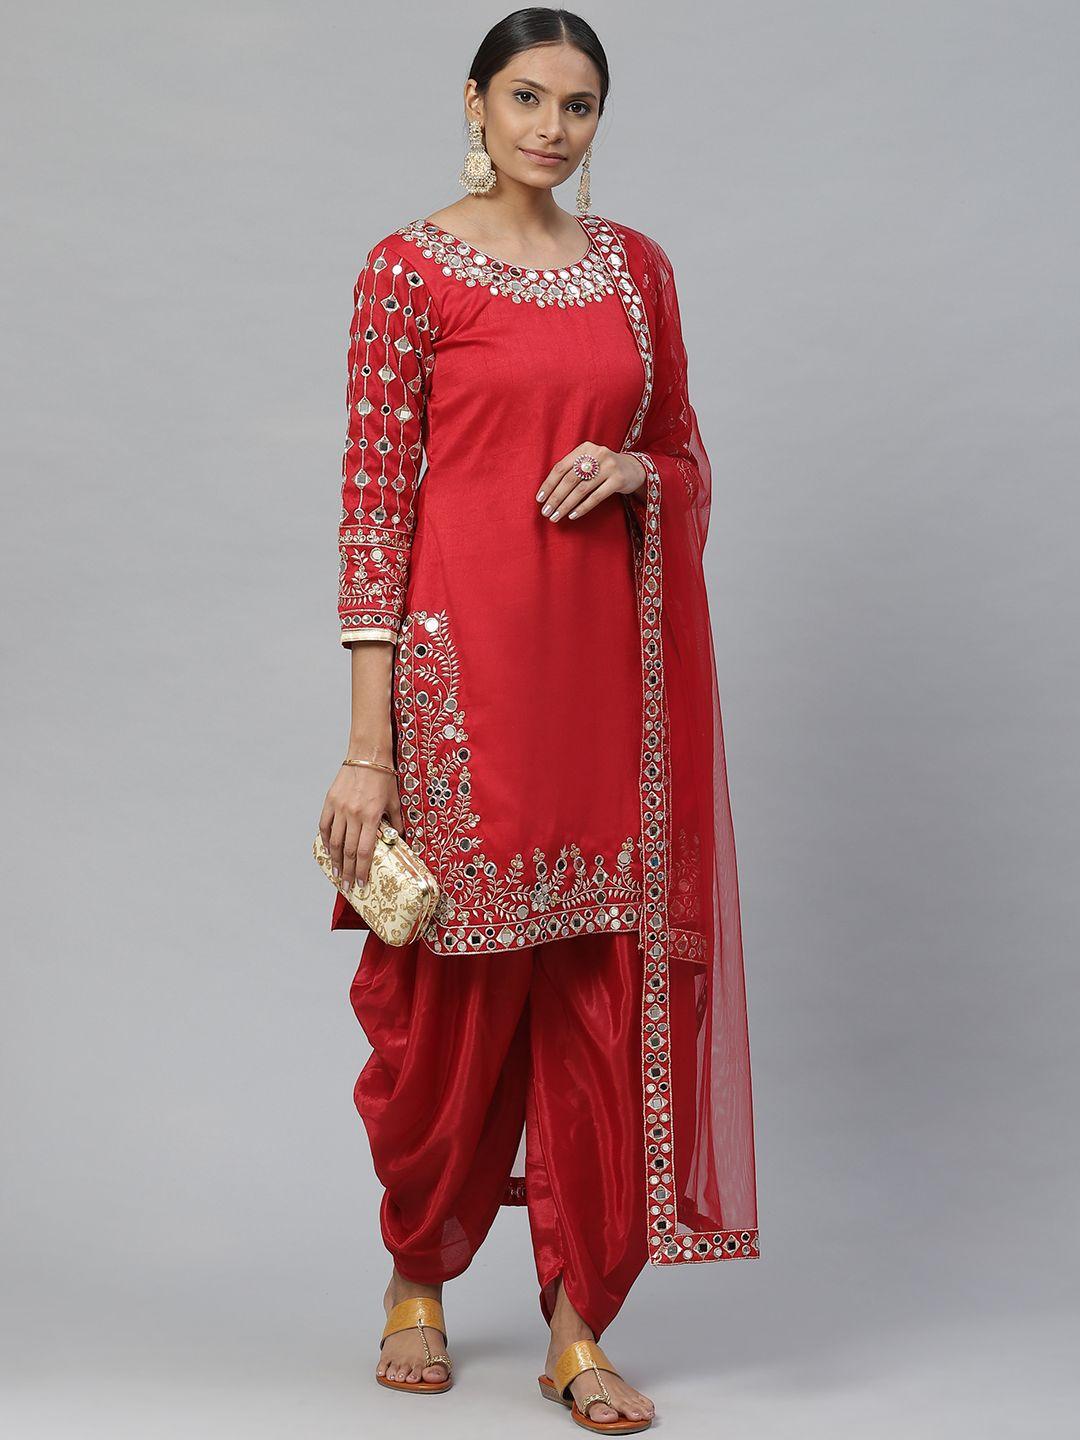 Readiprint Fashions Red Art Silk Semi-Stitched Dress Material